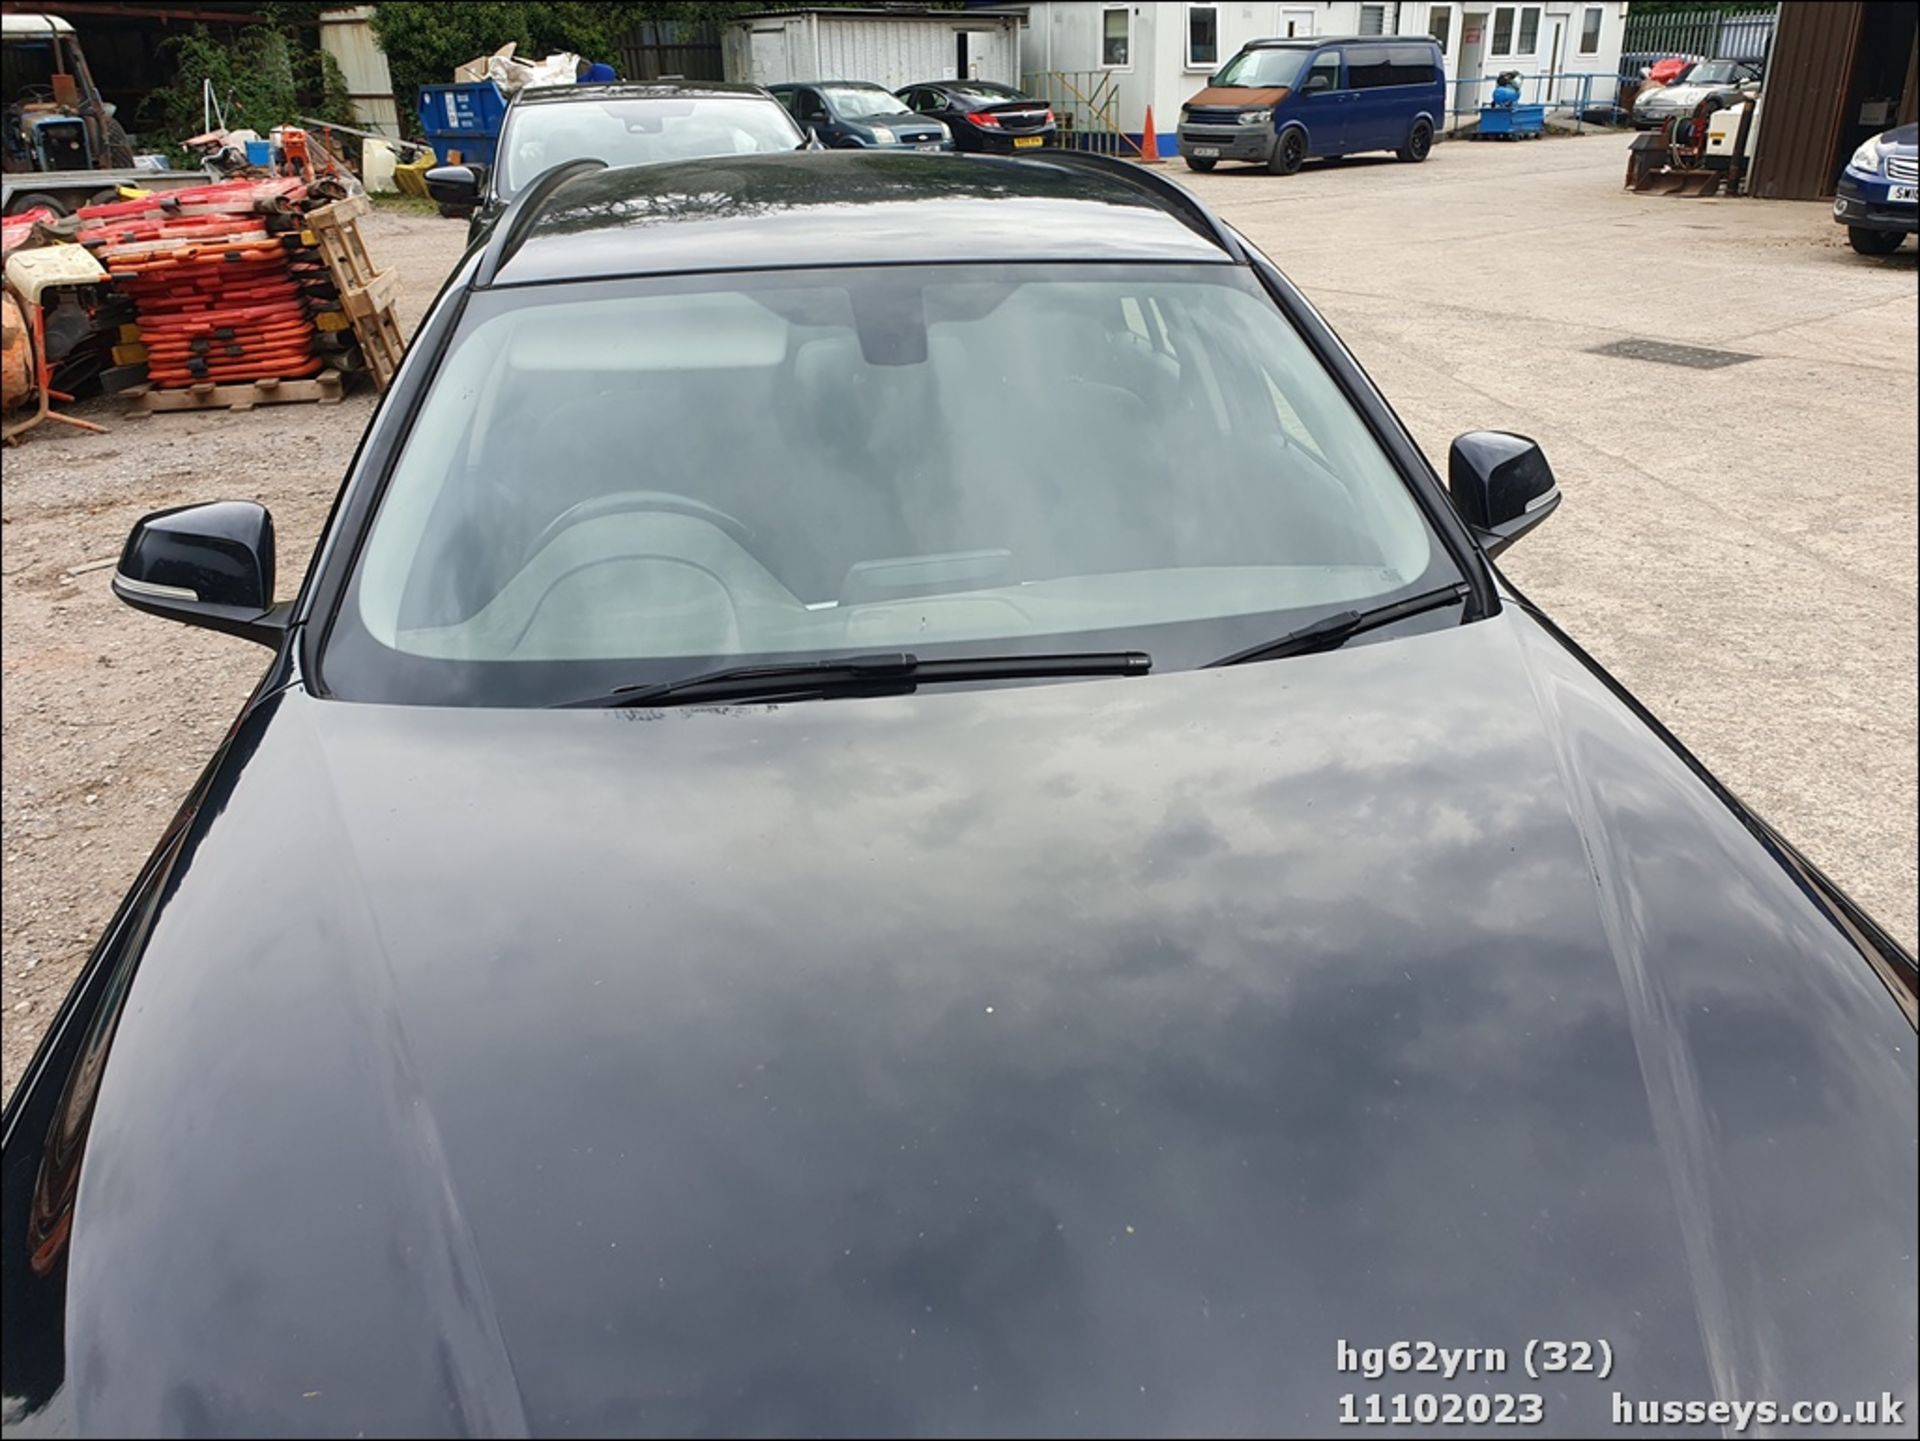 13/62 BMW 318D SE - 1995cc 5dr Estate (Black, 201k) - Image 33 of 58